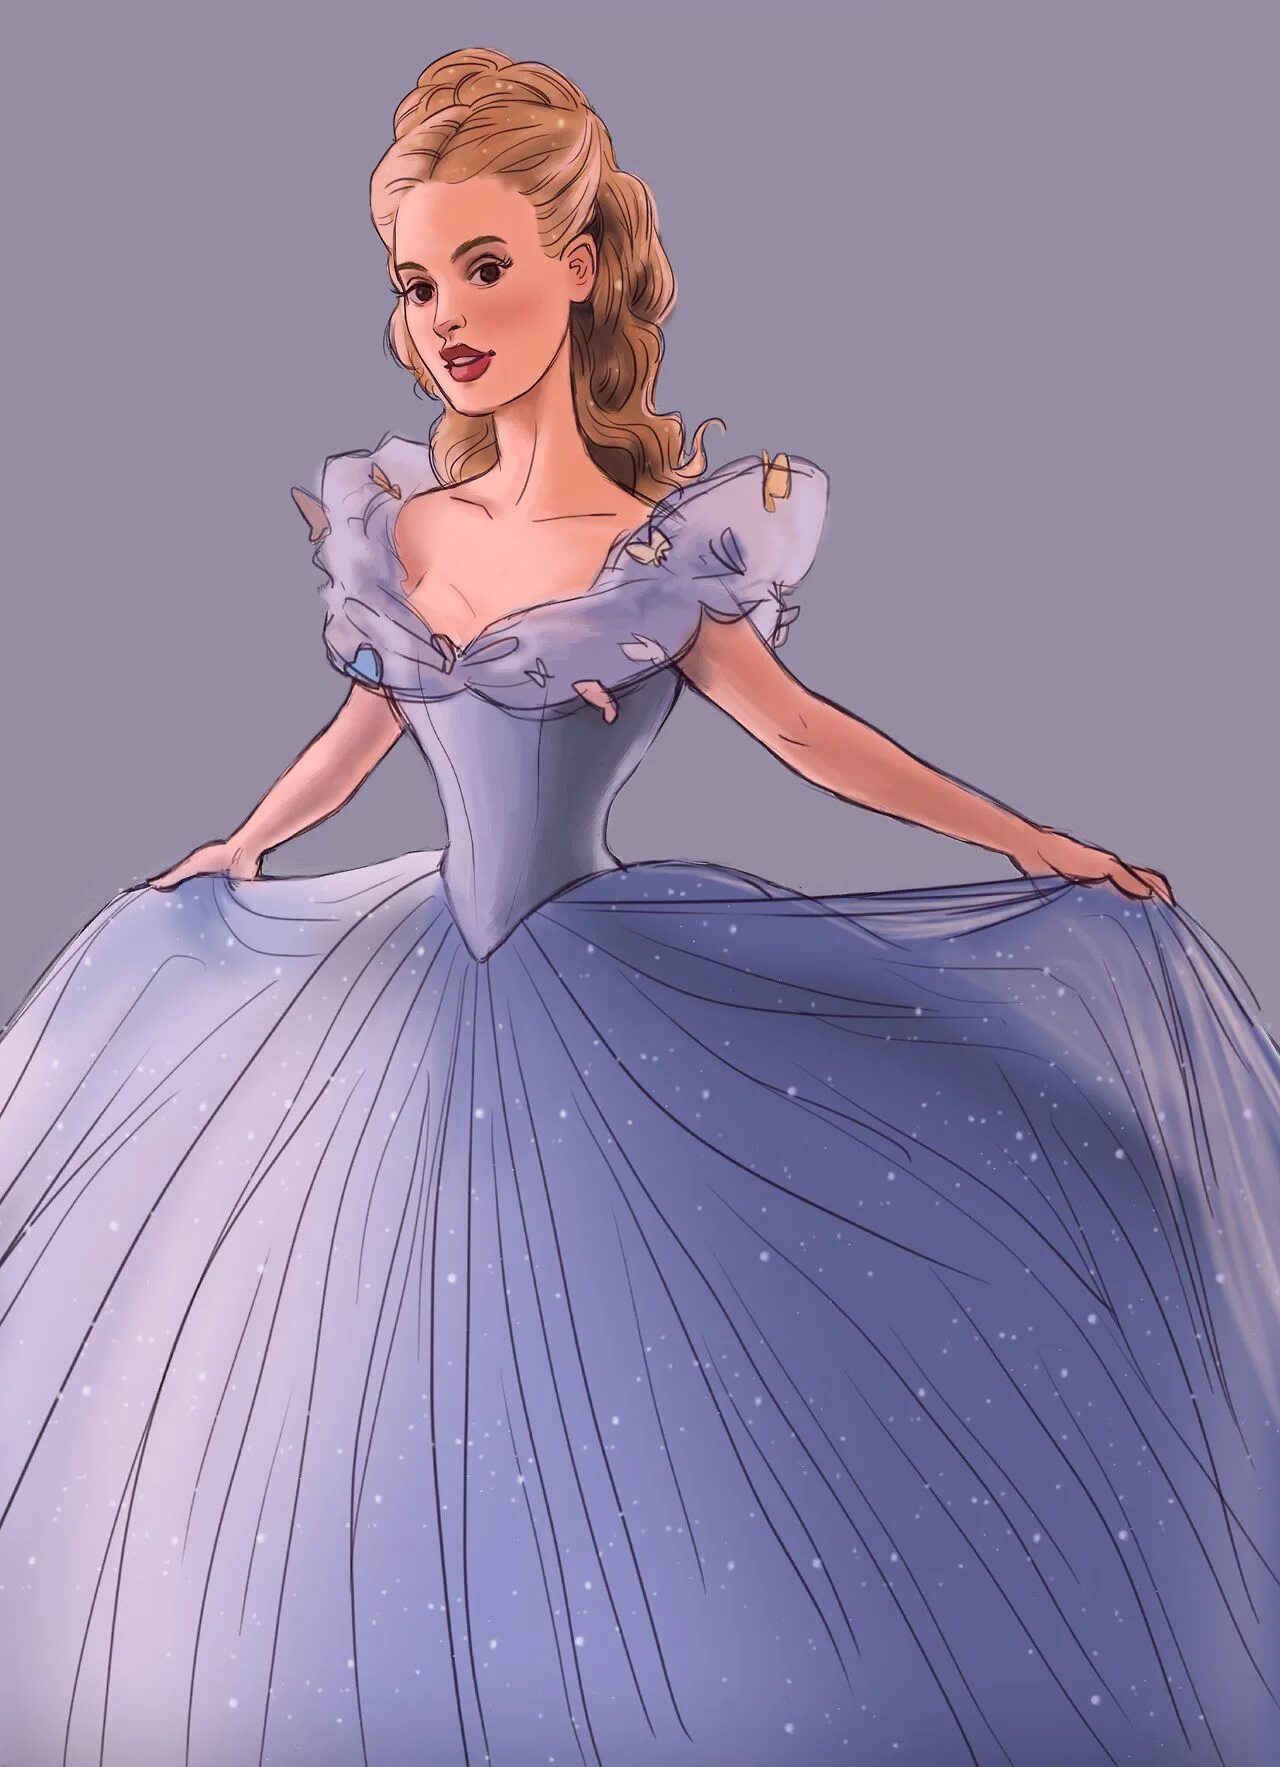 Самую принцессу. Платье Золушки Дисней. Золушка в бальном платье Дисней. Красивая принцесса. Принцесса в бальном платье.